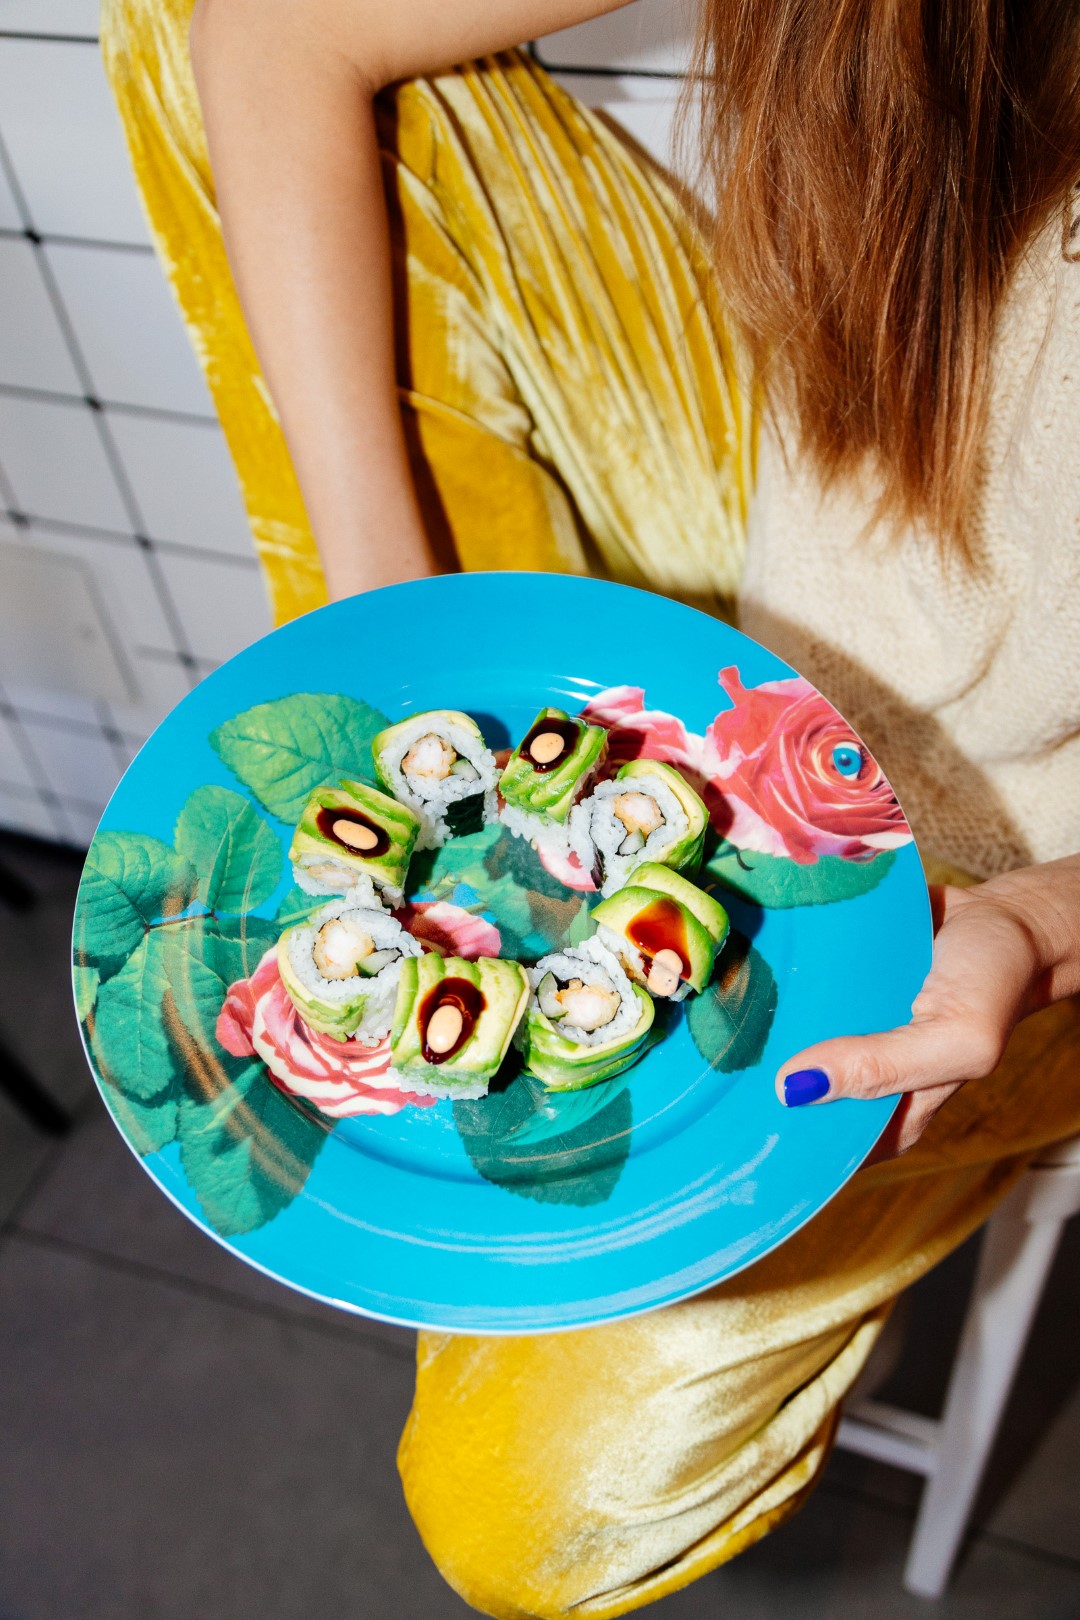 SoHo Sushi Rolls & Poke bowls razigranim vizualnim identitetom i šarenim zalogajima donosi novi doživljaj